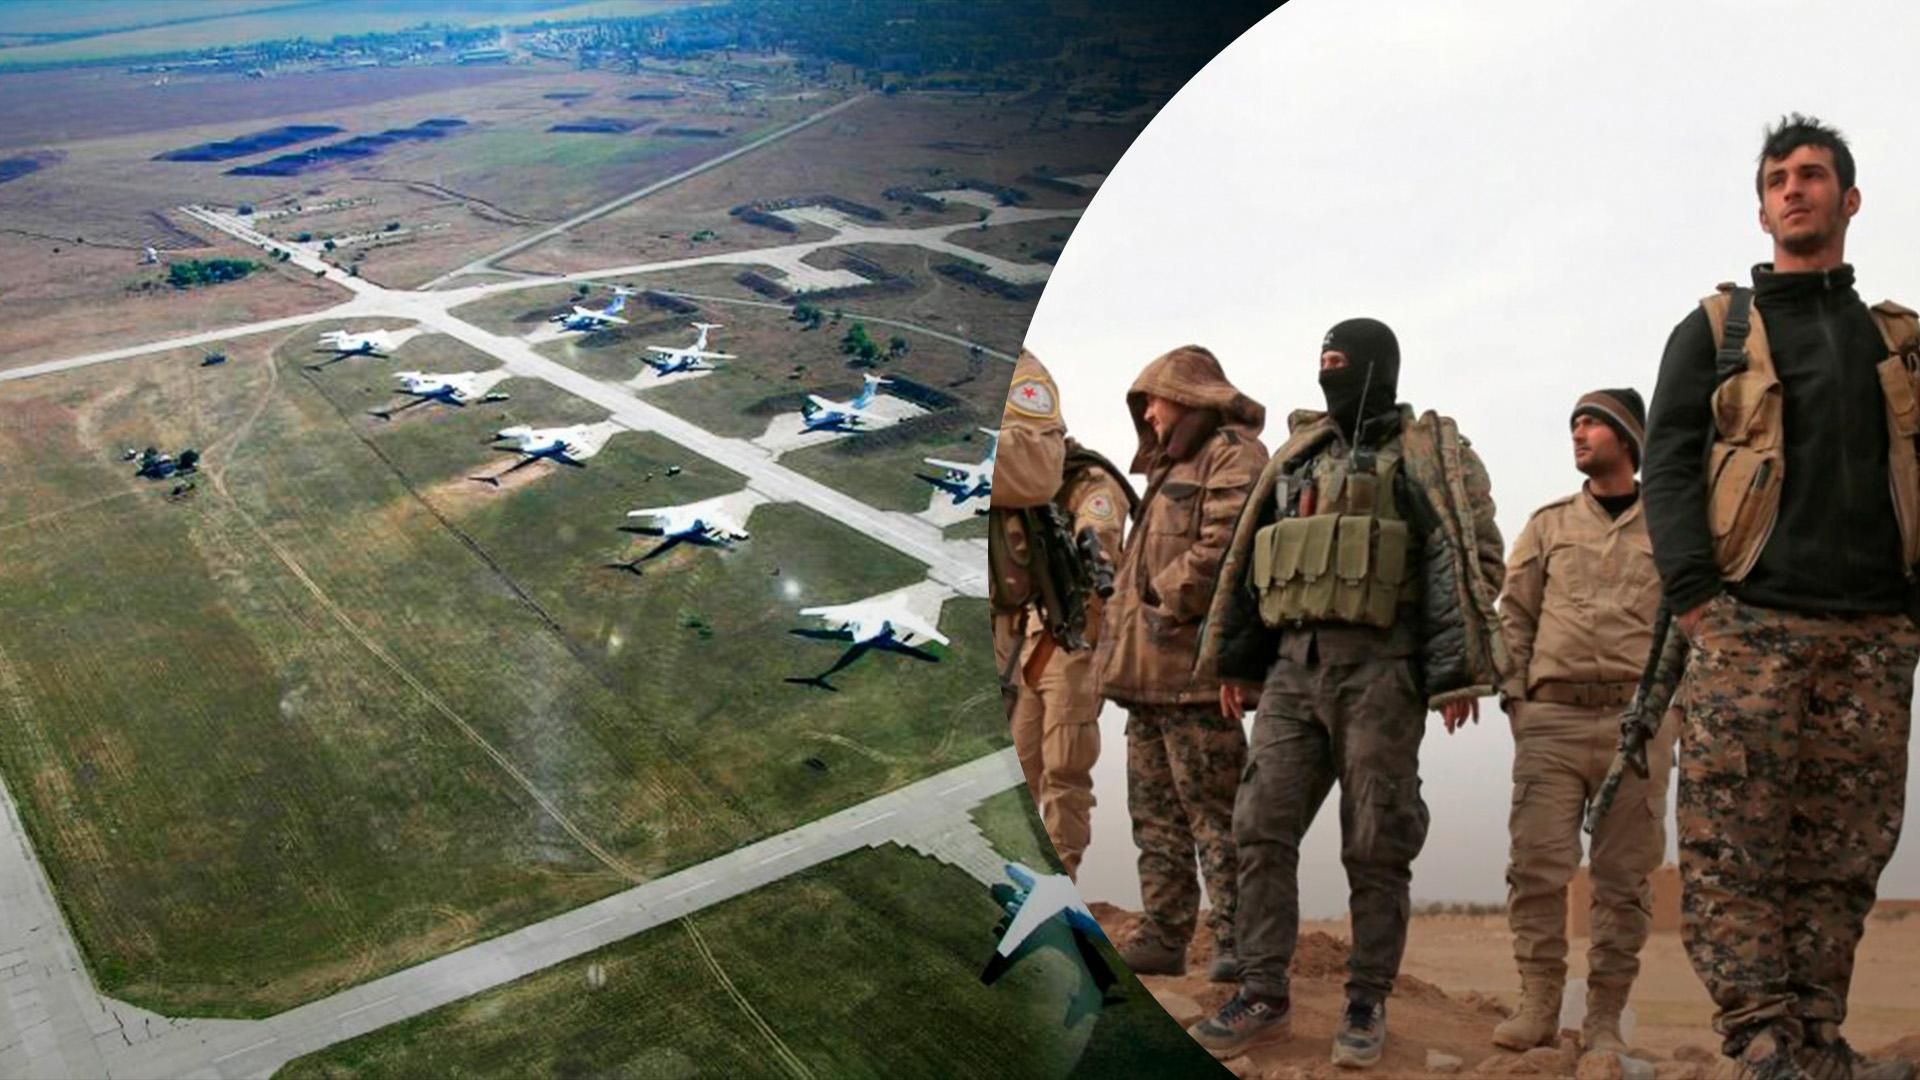 На военном аэродроме в Мелитополе появились наемники из Сирии, – СМИ